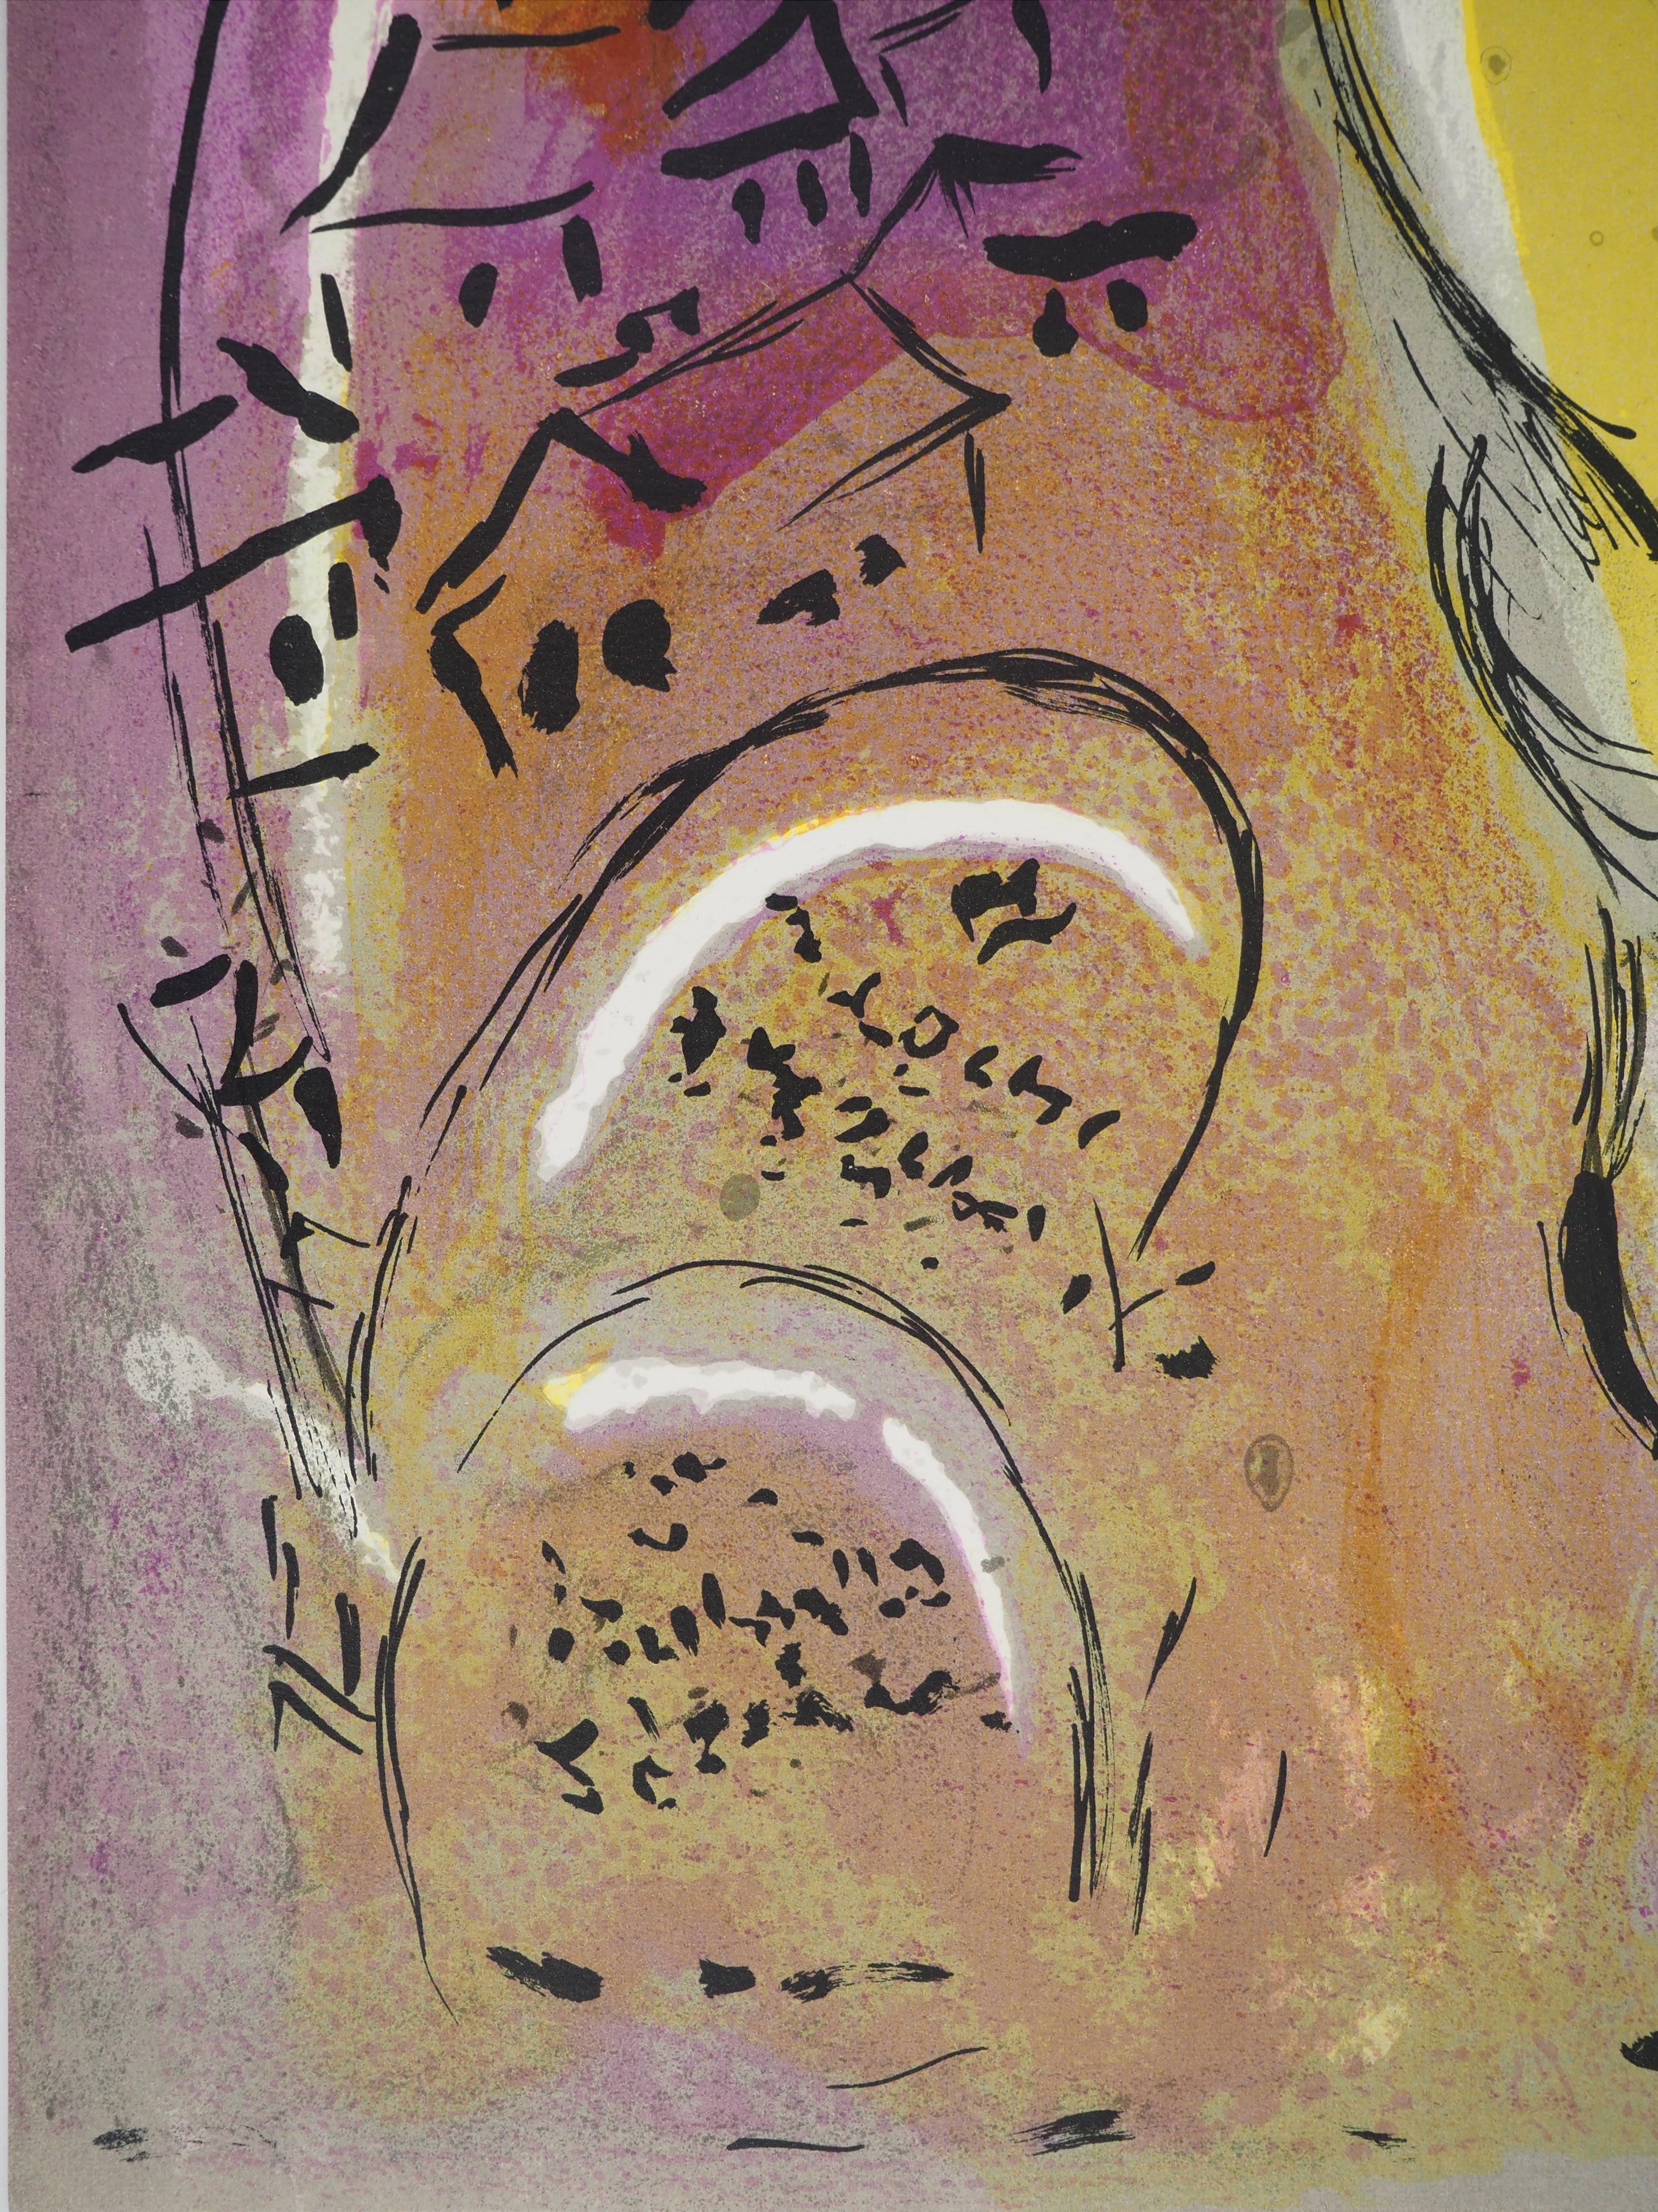 La Bible : La prière de Salomon - Lithographie originale - Print de Marc Chagall